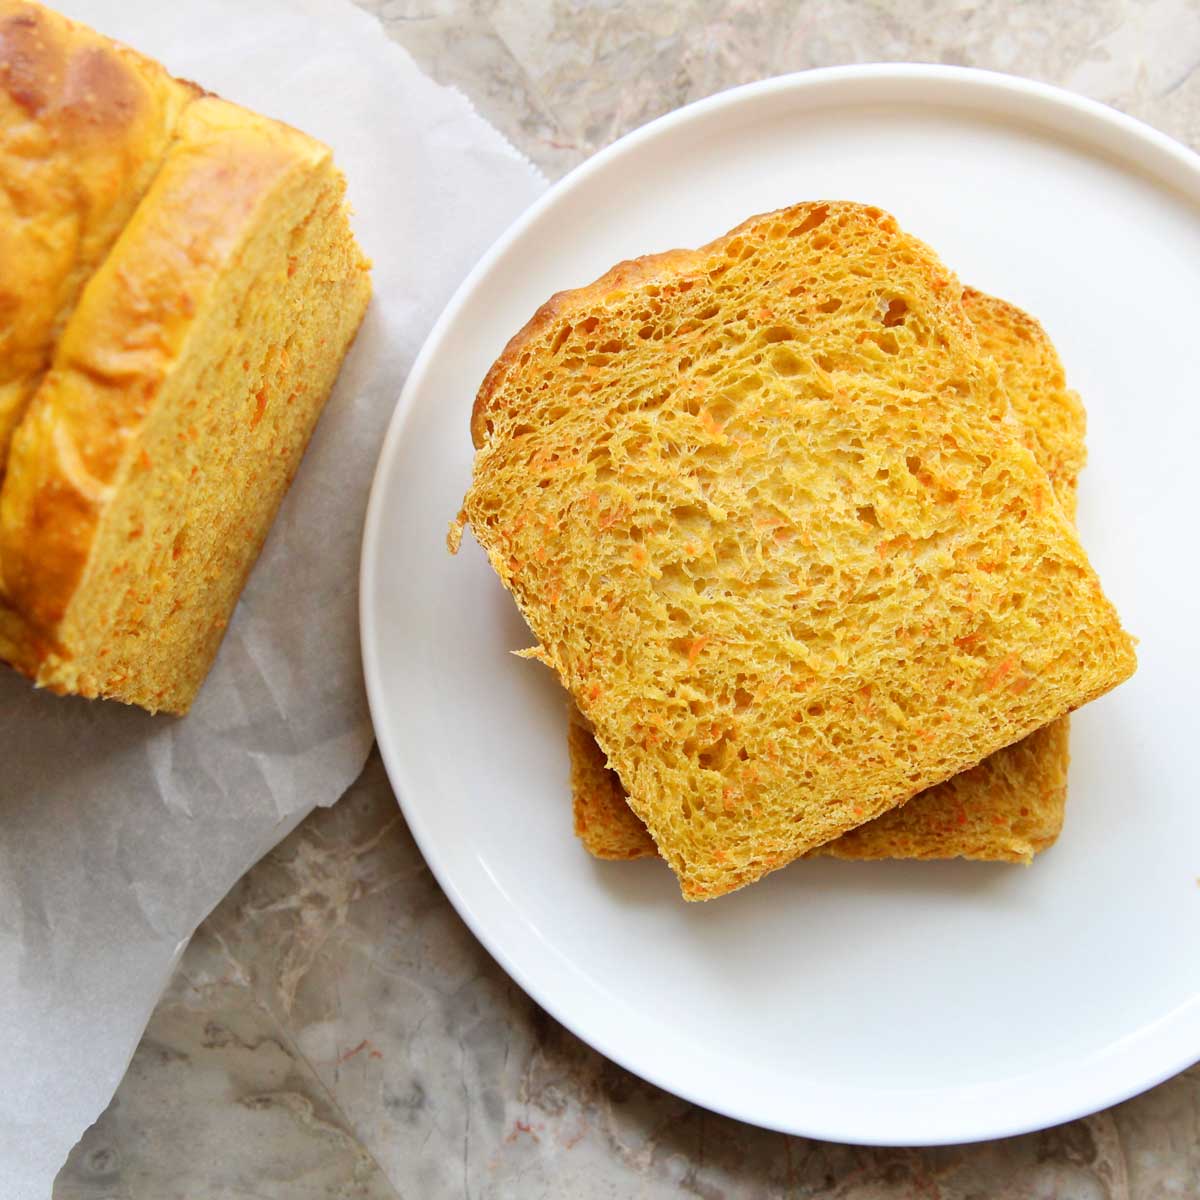 Healthy Carrot Sandwich Bread (Yeast Bread) Recipe - Lemon Whipped Cream